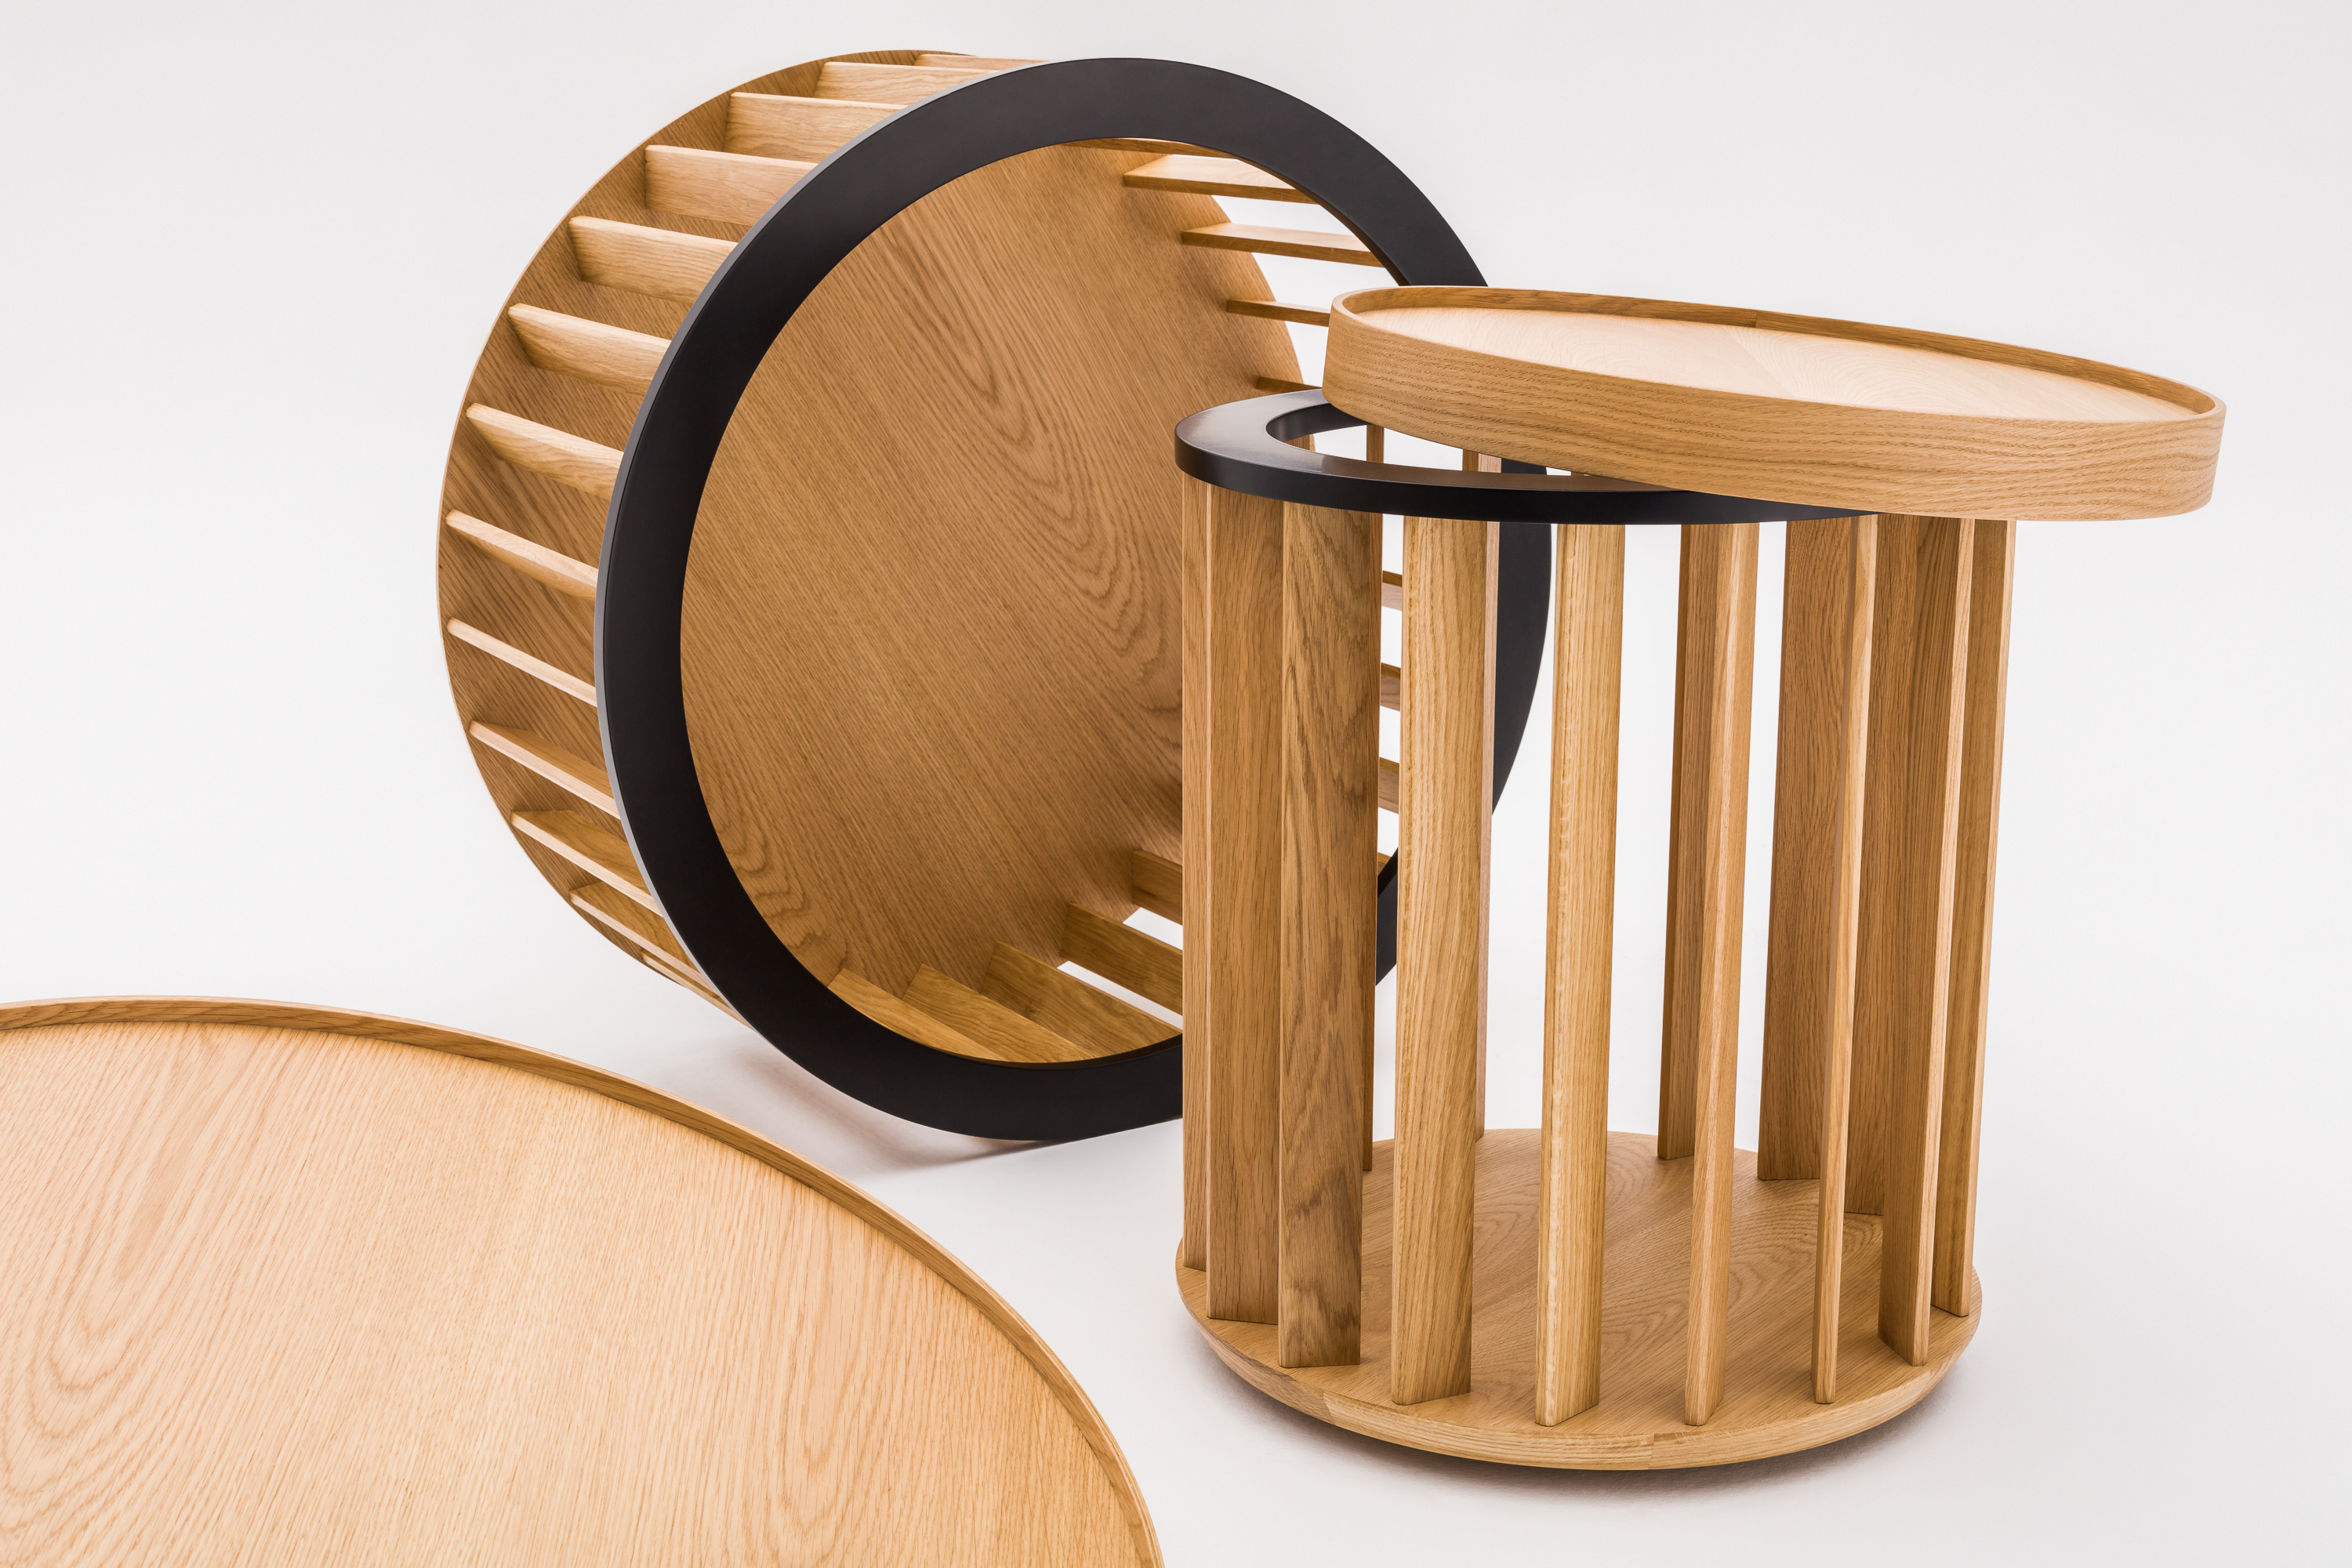 Kolekcja stolików Circus projektu Krystiana Kowalskiego zapowiada nowe otwarcie w dziedzinie mebli drewnianych w ofercie Comforty.